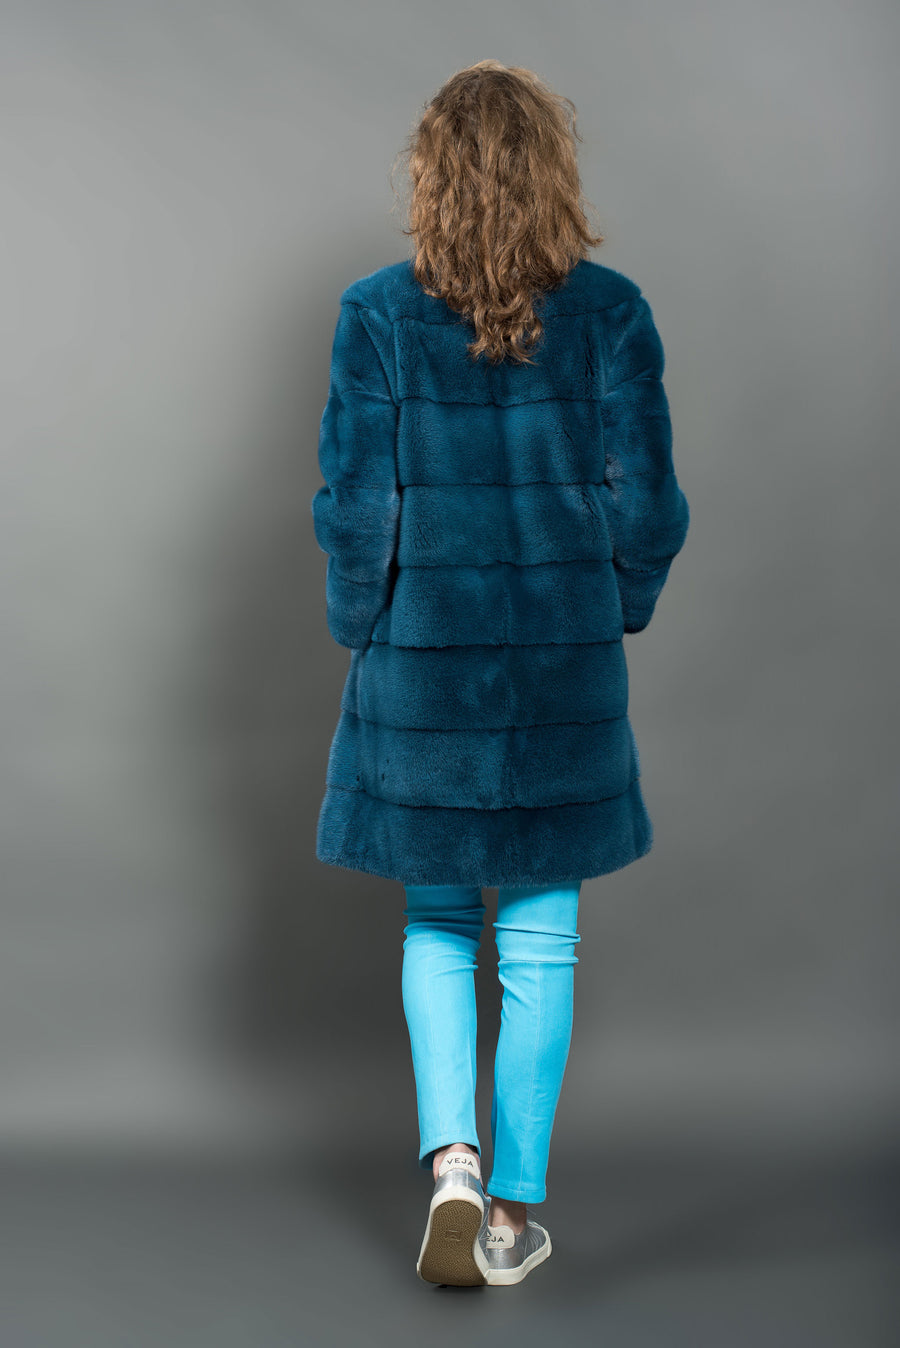 Azurene Mink Fur Jacket - Women's Mink Jacket - Large | Estate Furs